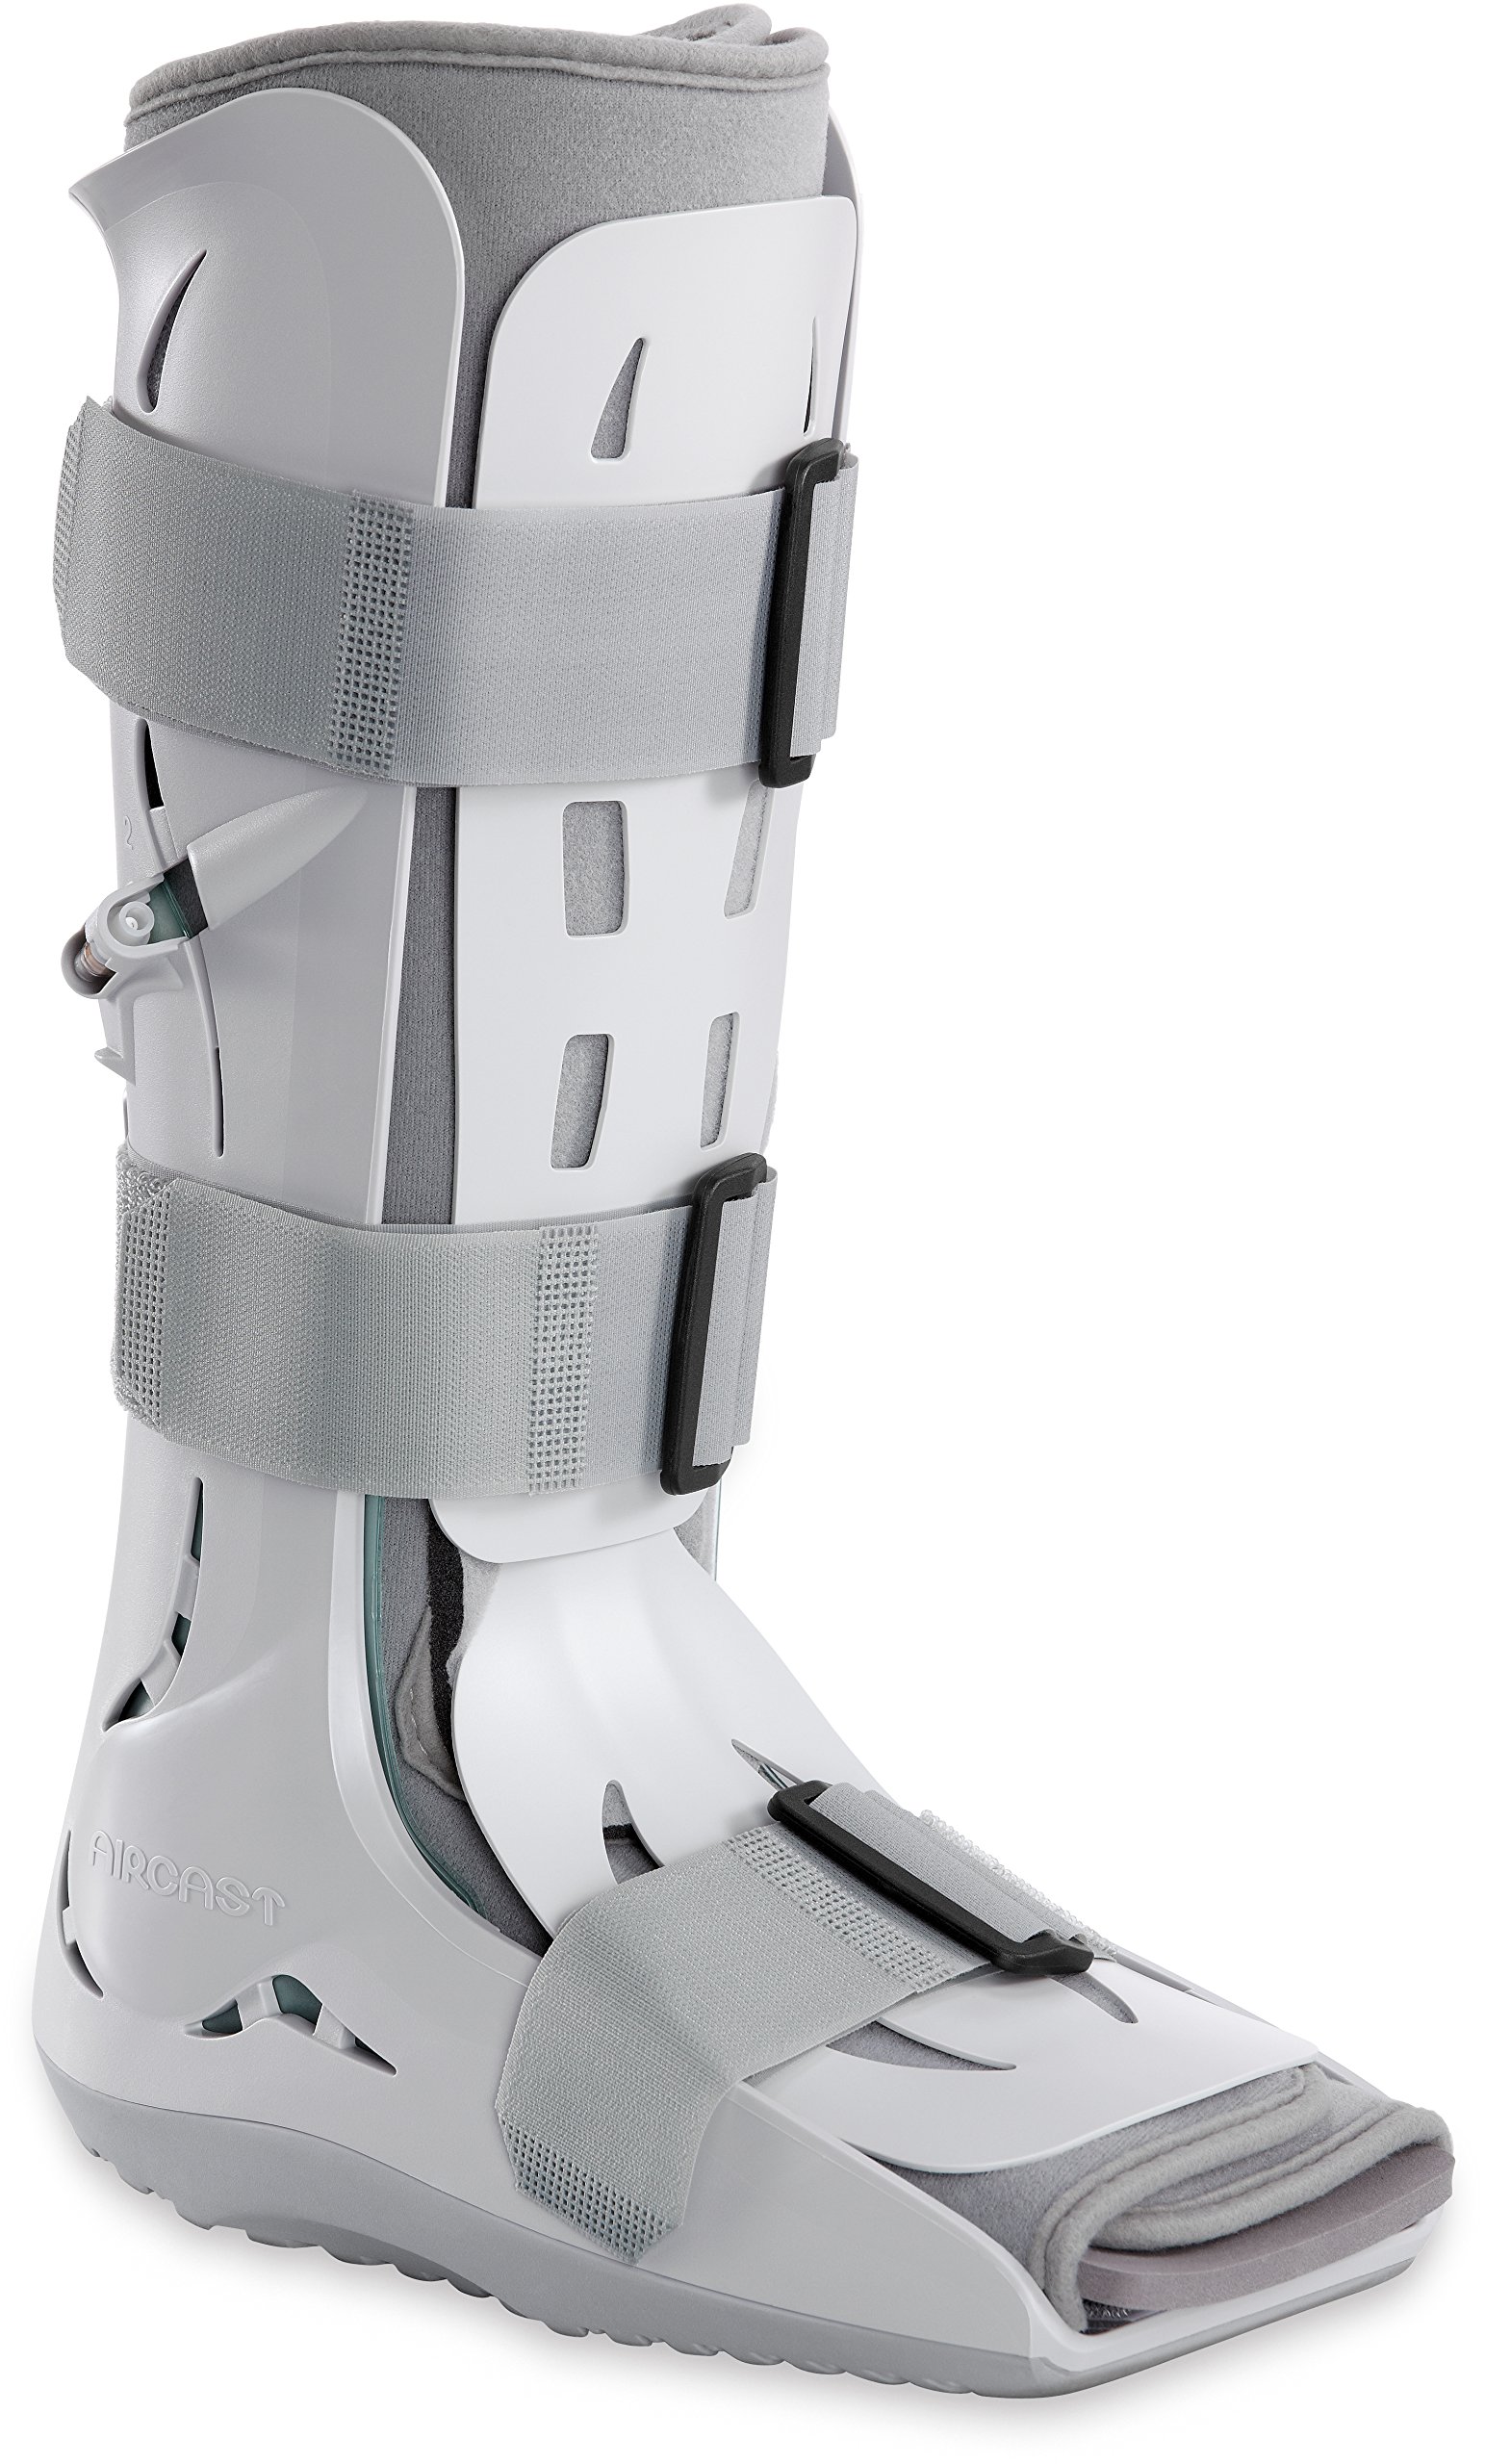 Aircast FP (Foam Pneumatic) Walker Brace/Walking Boot